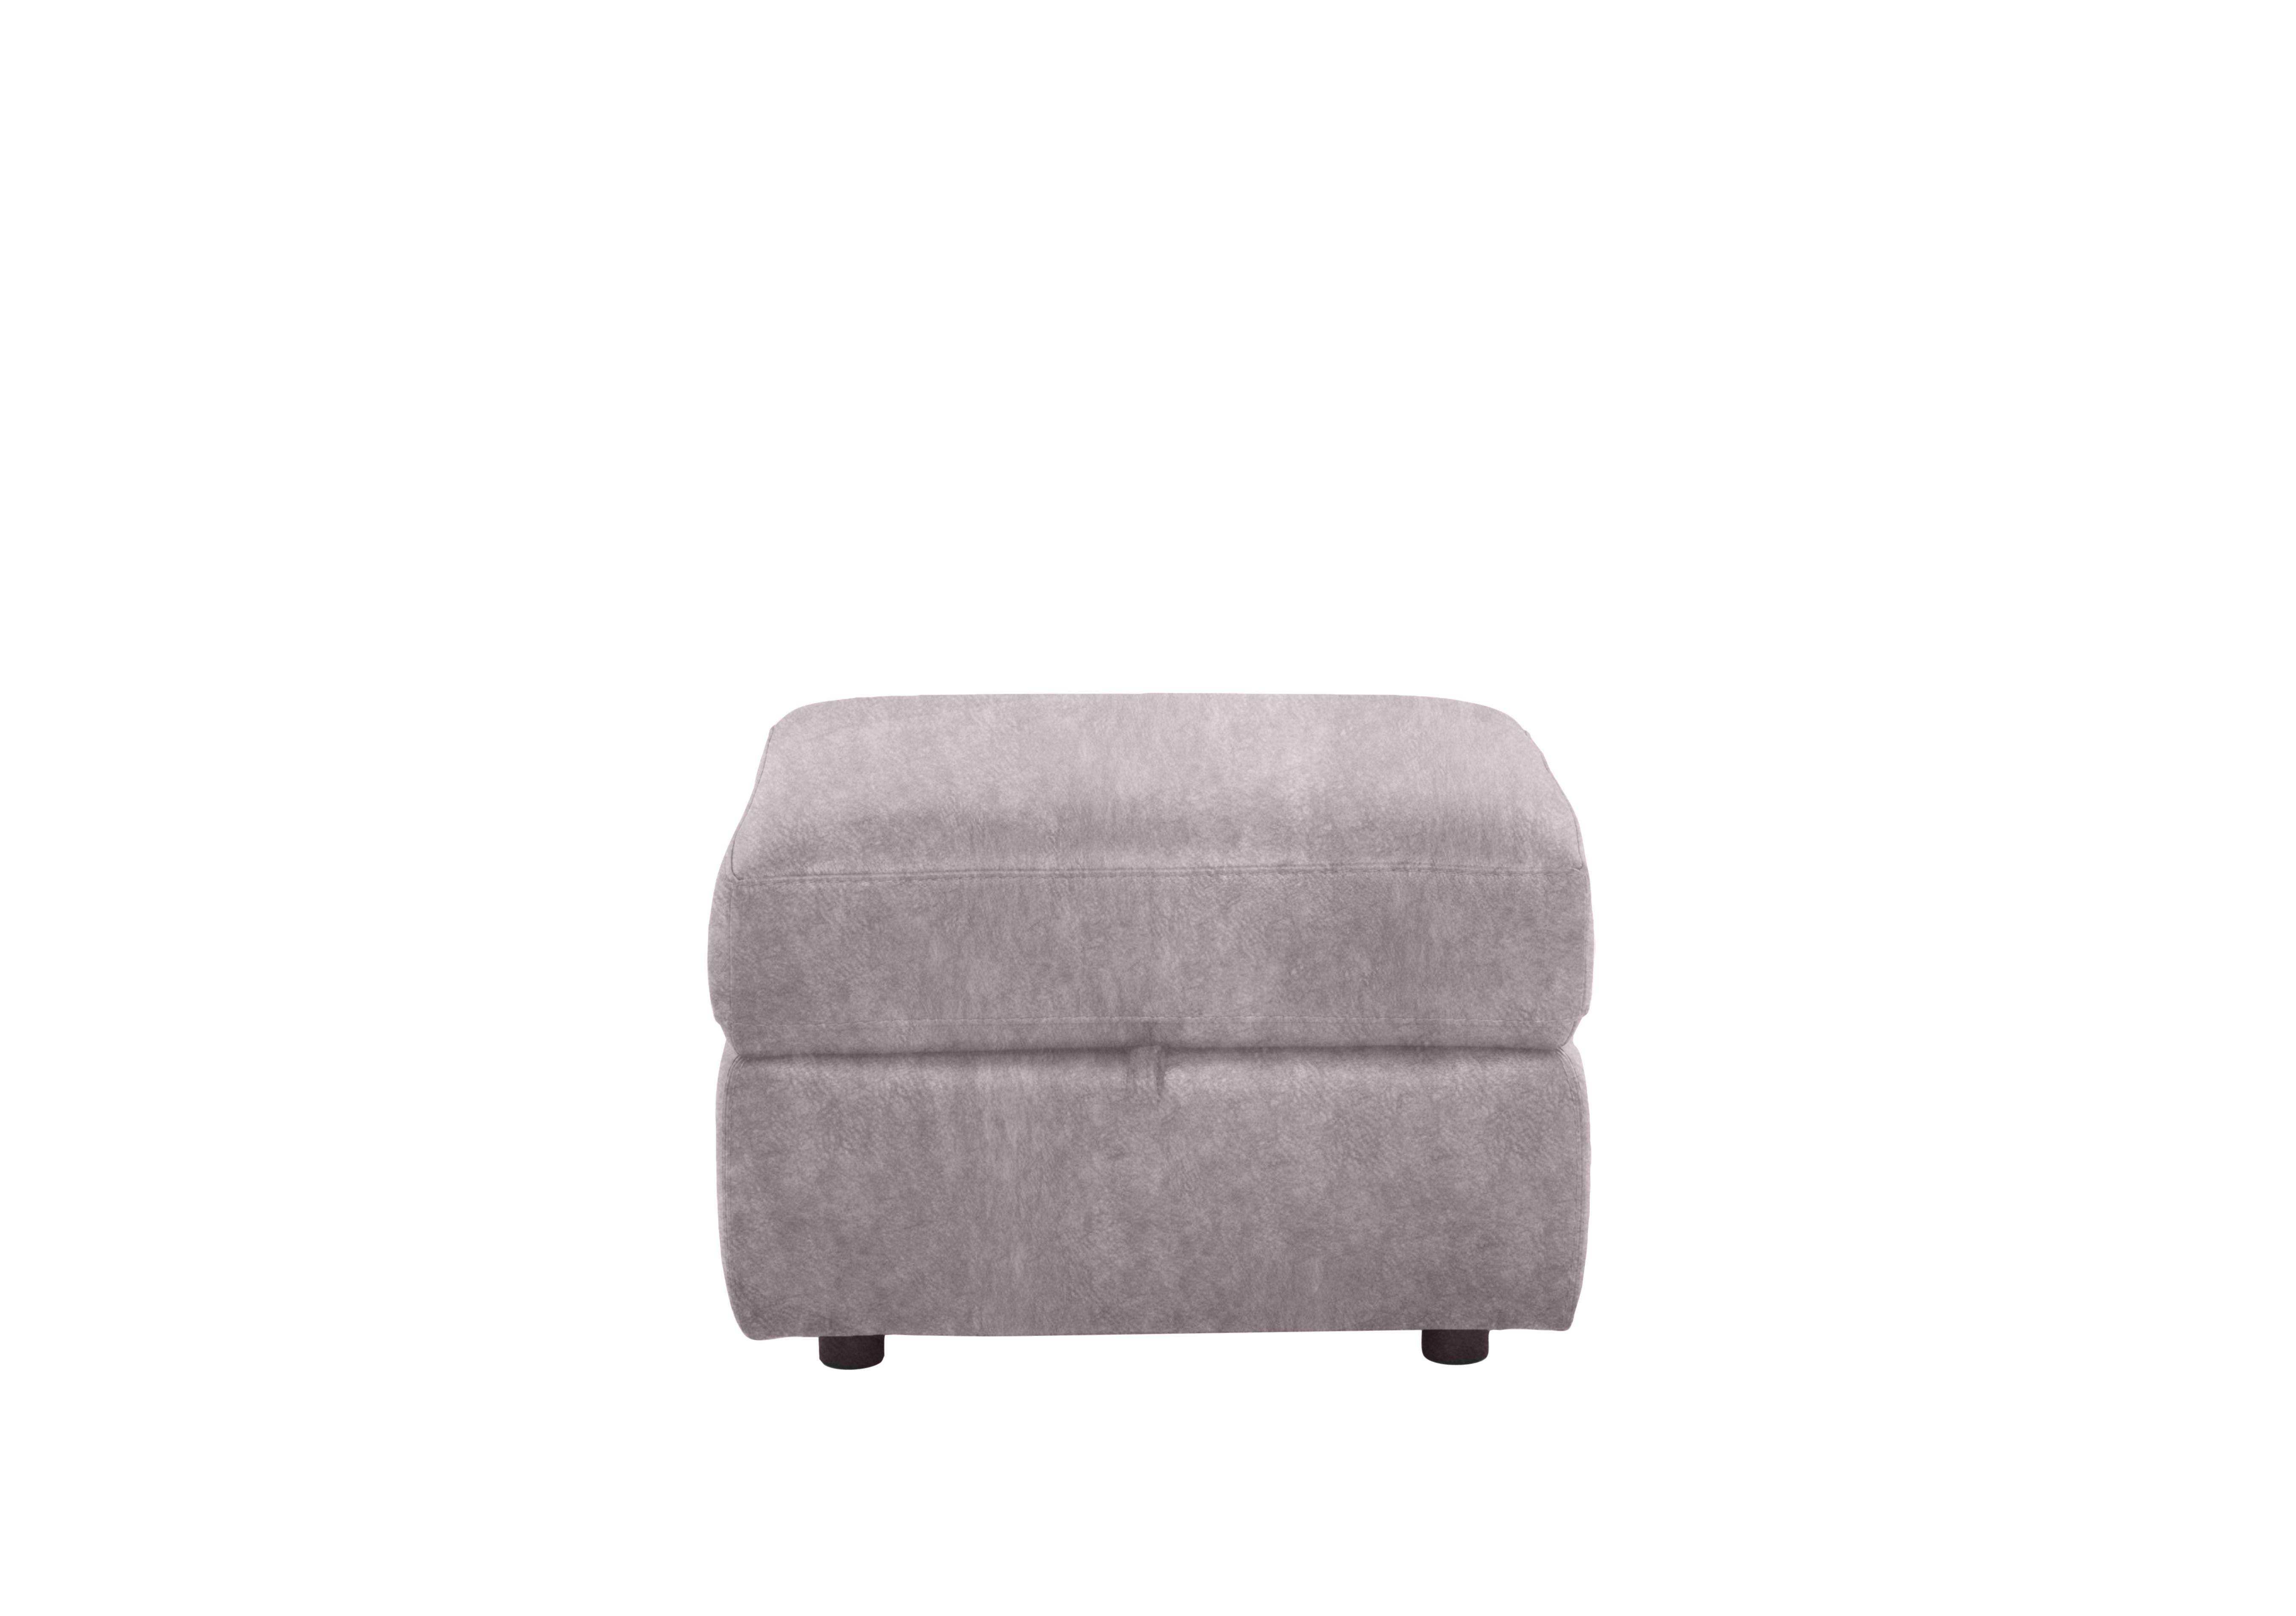 Fabric Storage Footstool in Bfa-Bnn-R28 Grey on Furniture Village